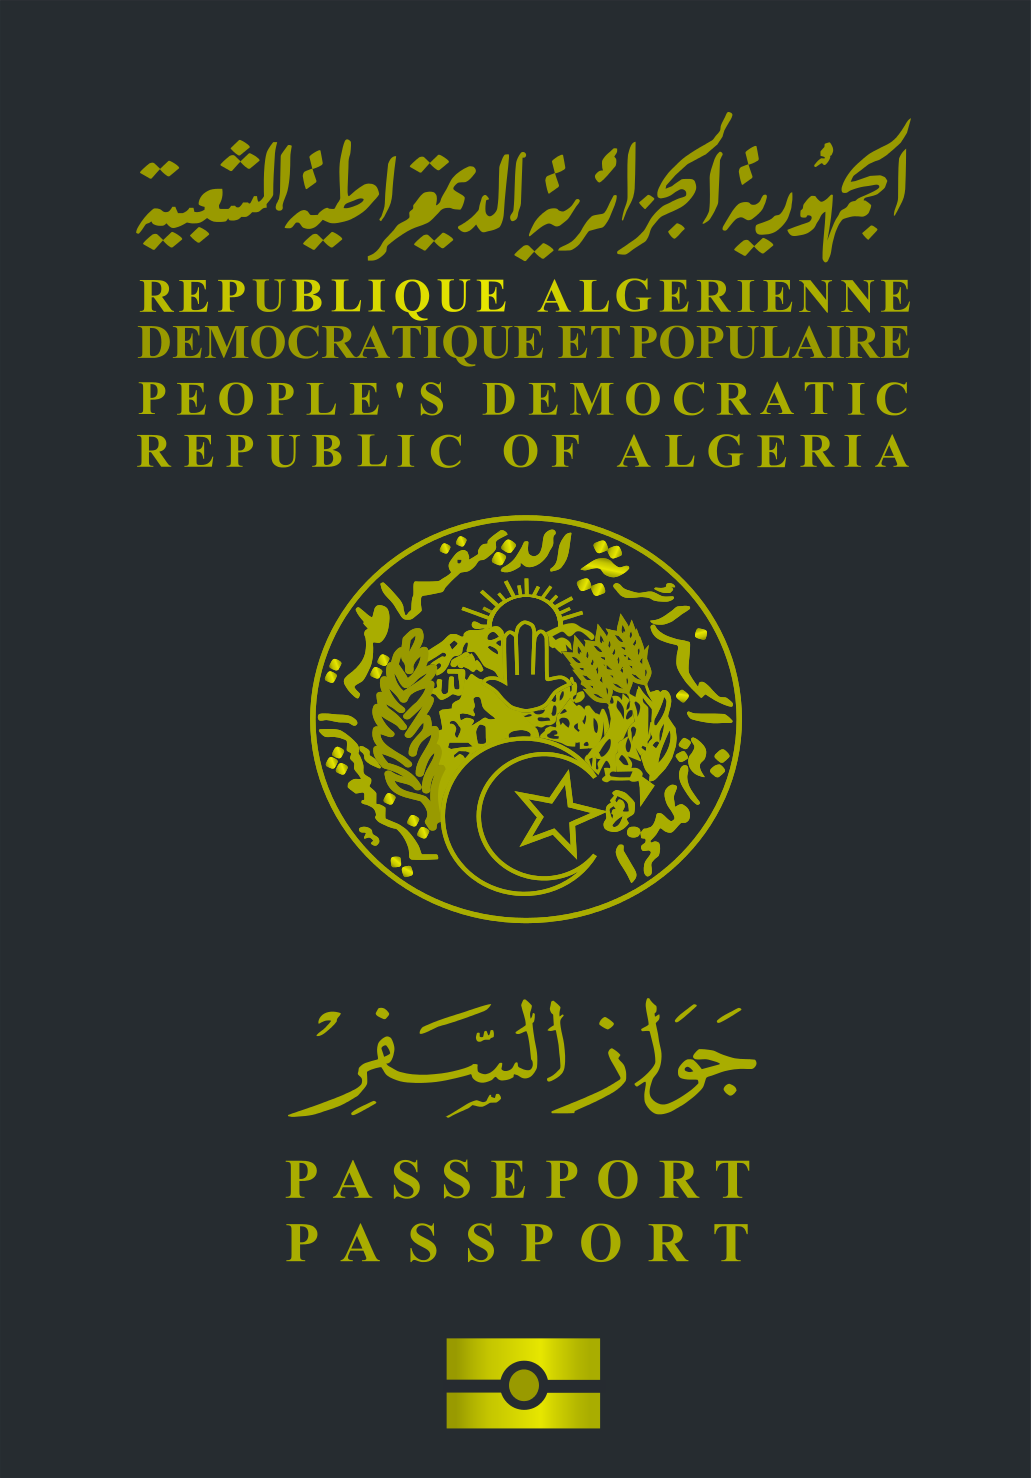 阿爾及利亞護照